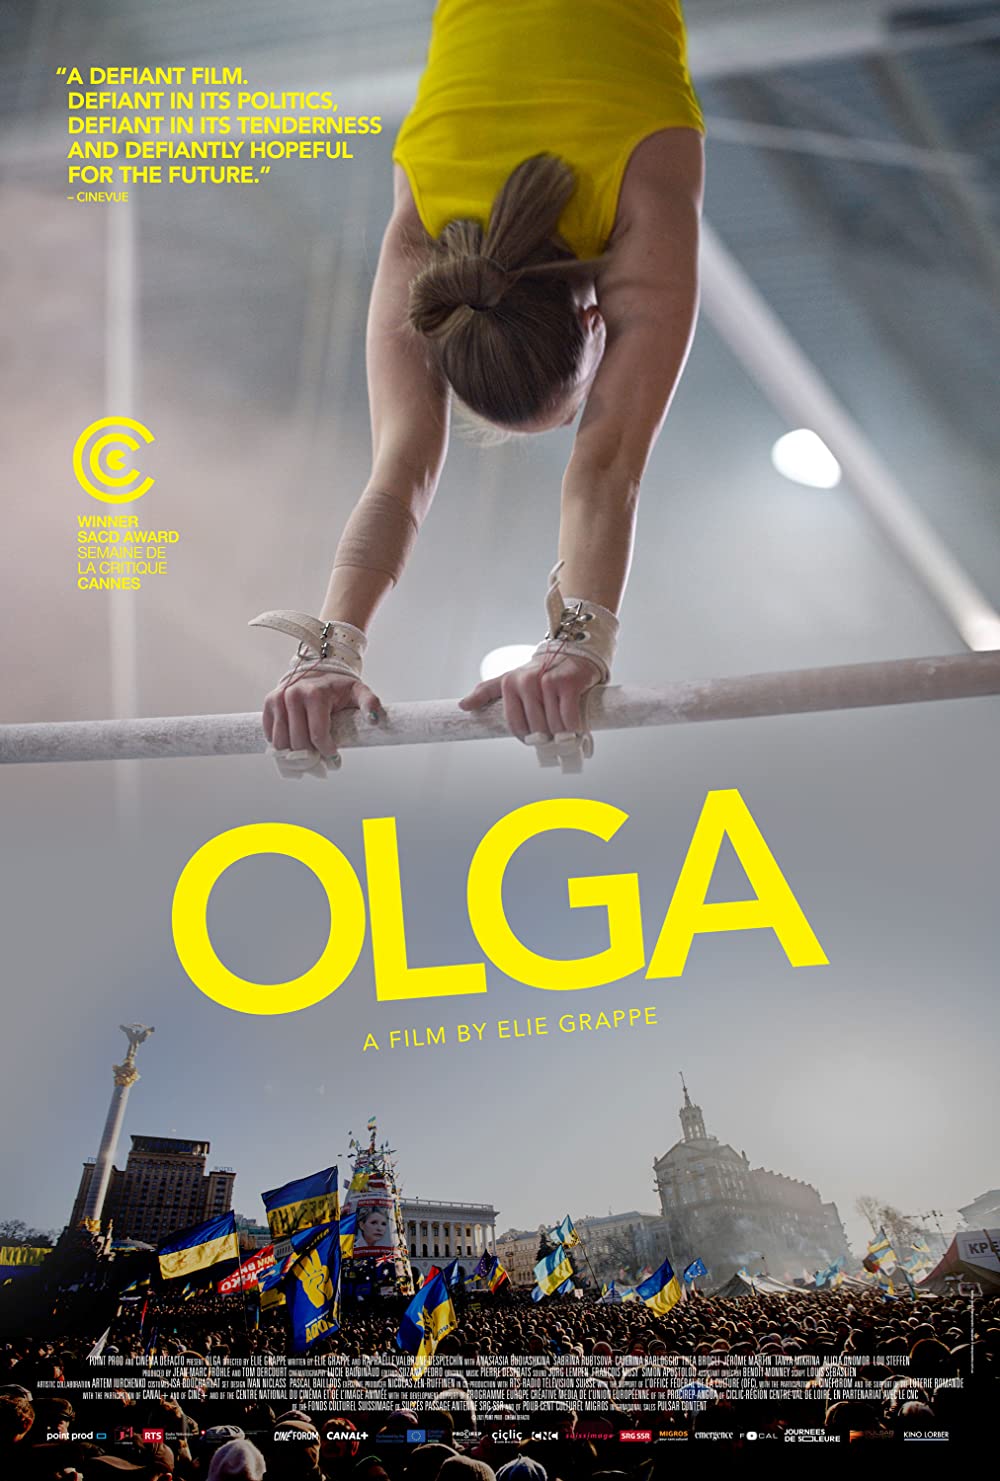 Filmbeschreibung zu Olga